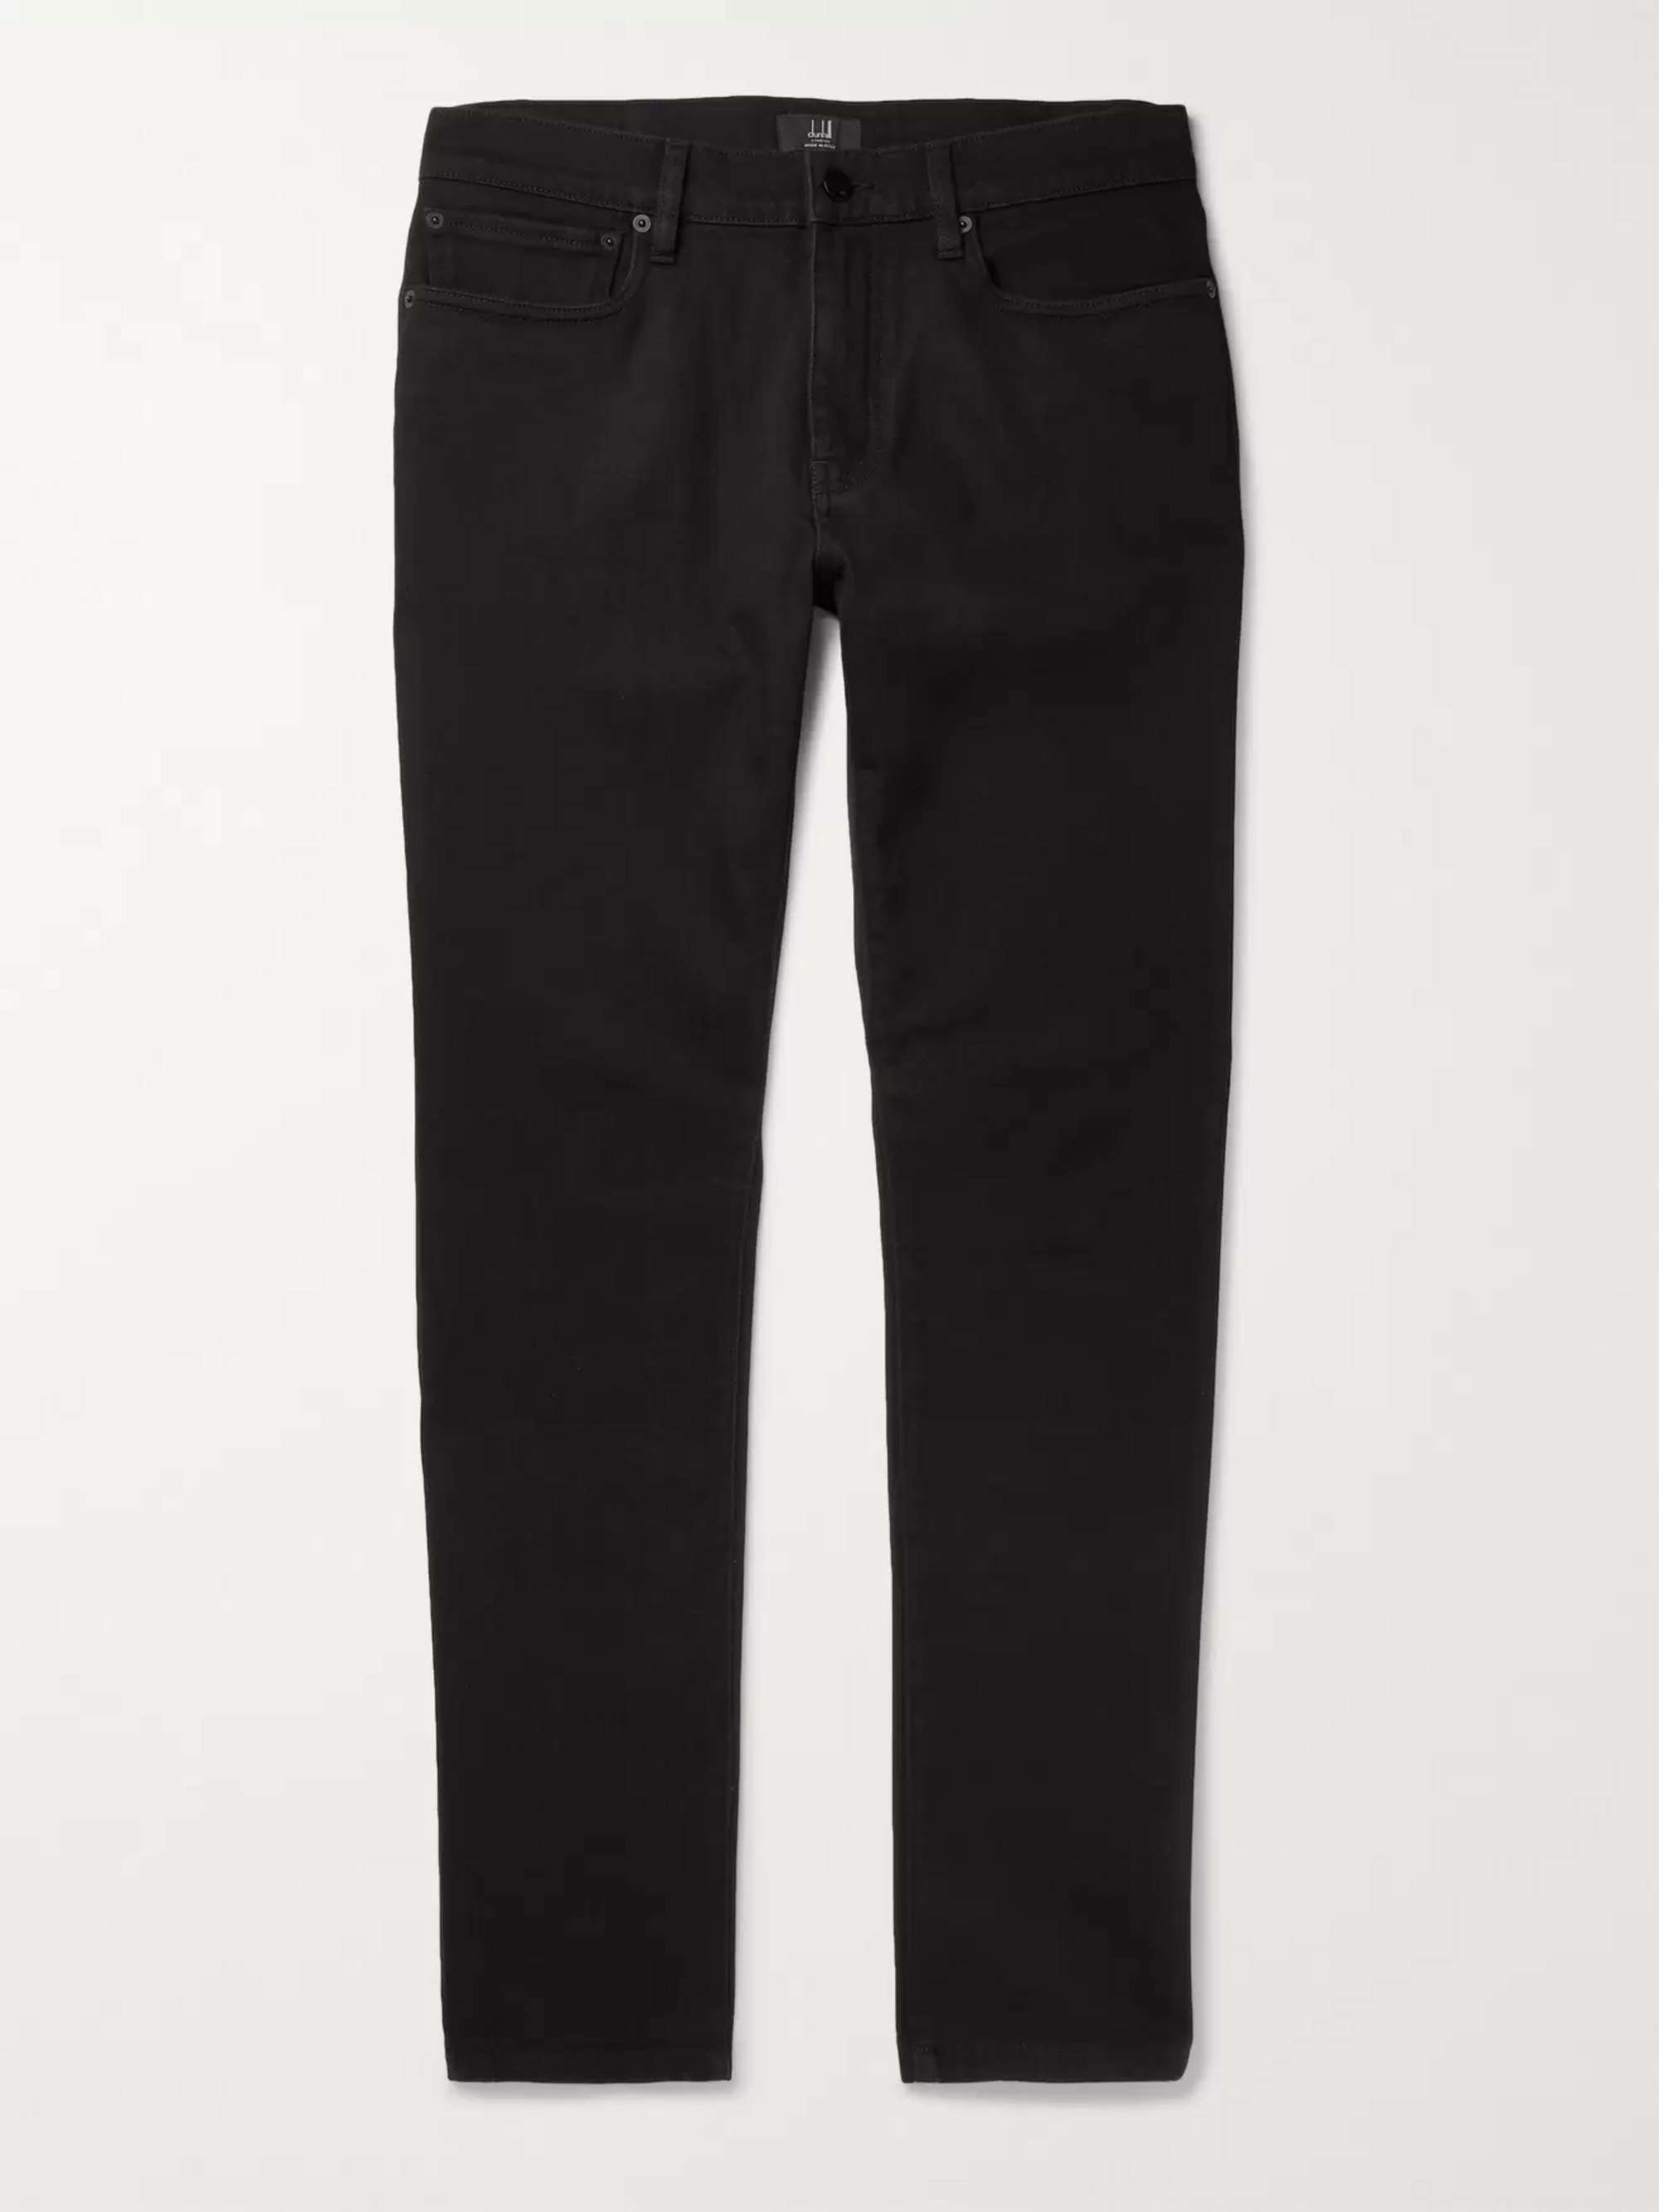 Black Slim-Fit Stretch-Denim Jeans | DUNHILL | MR PORTER